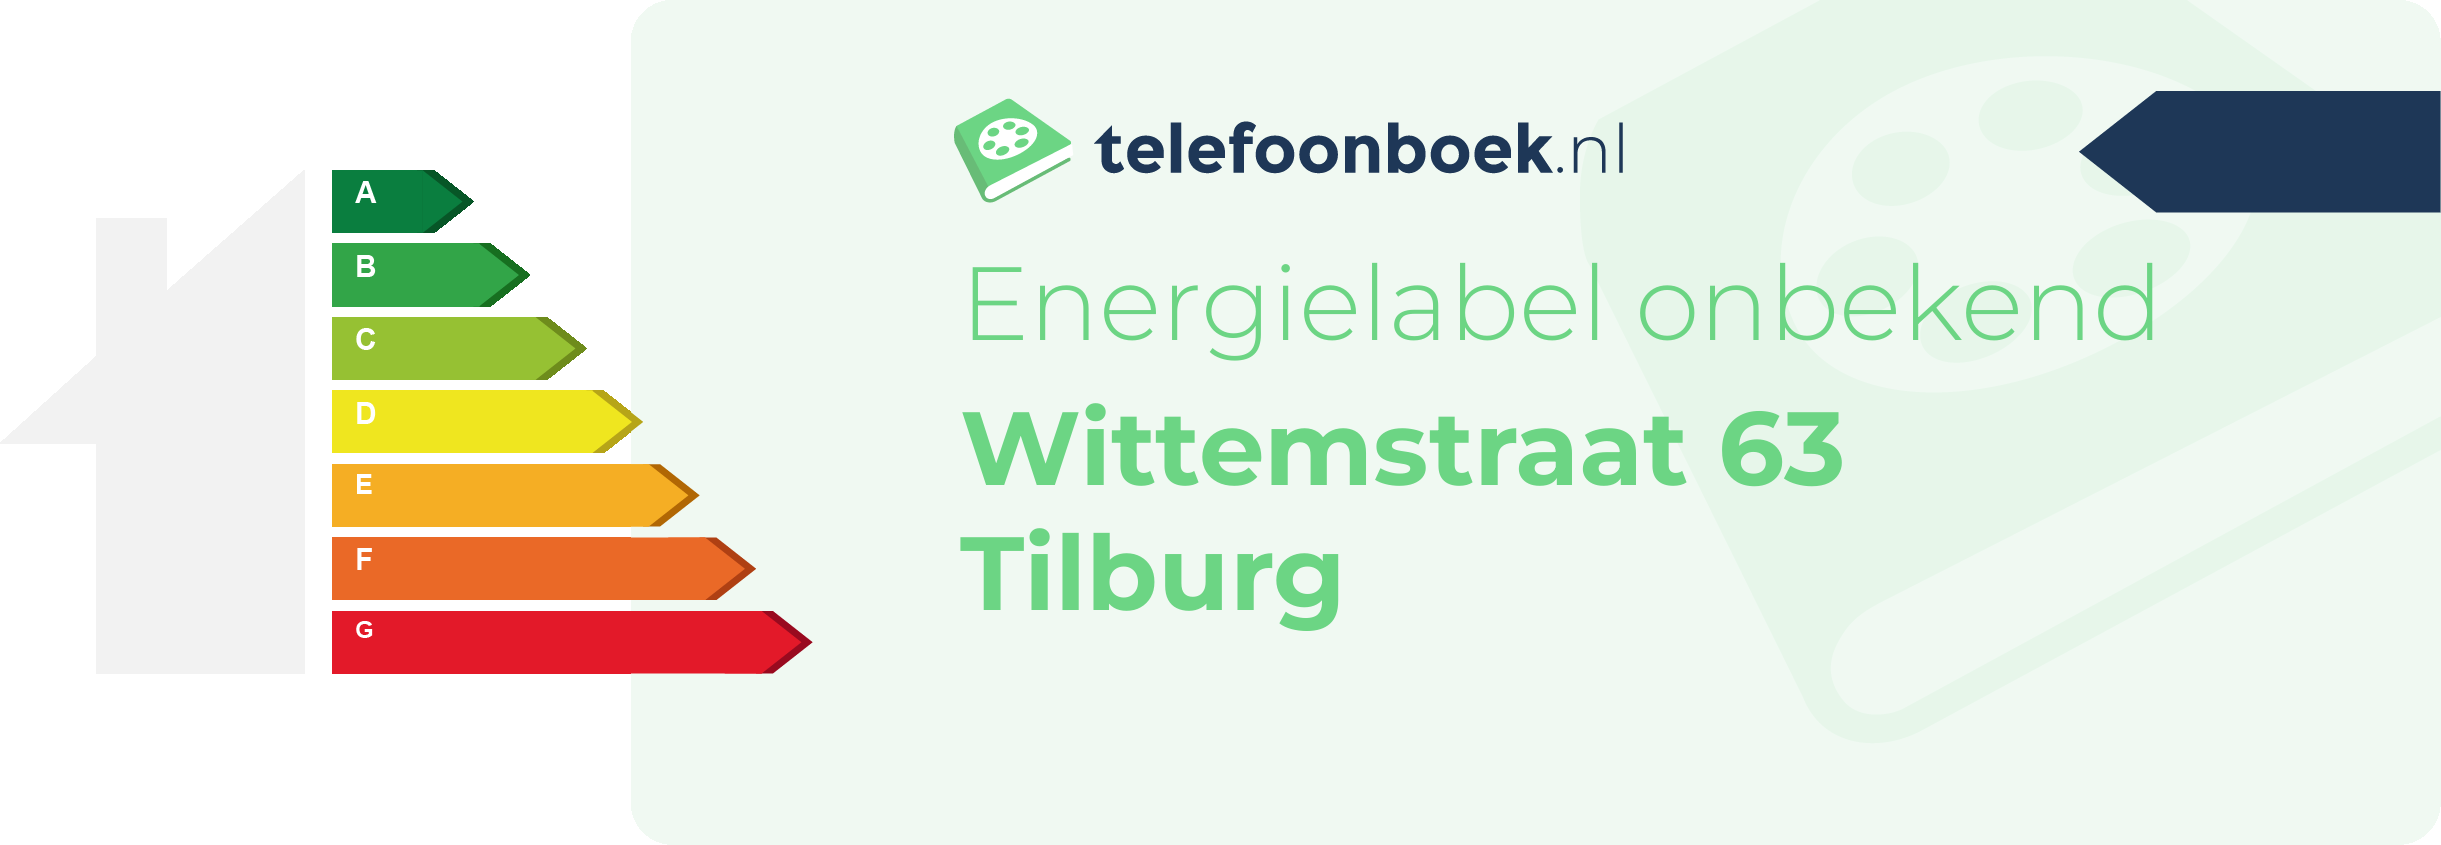 Energielabel Wittemstraat 63 Tilburg